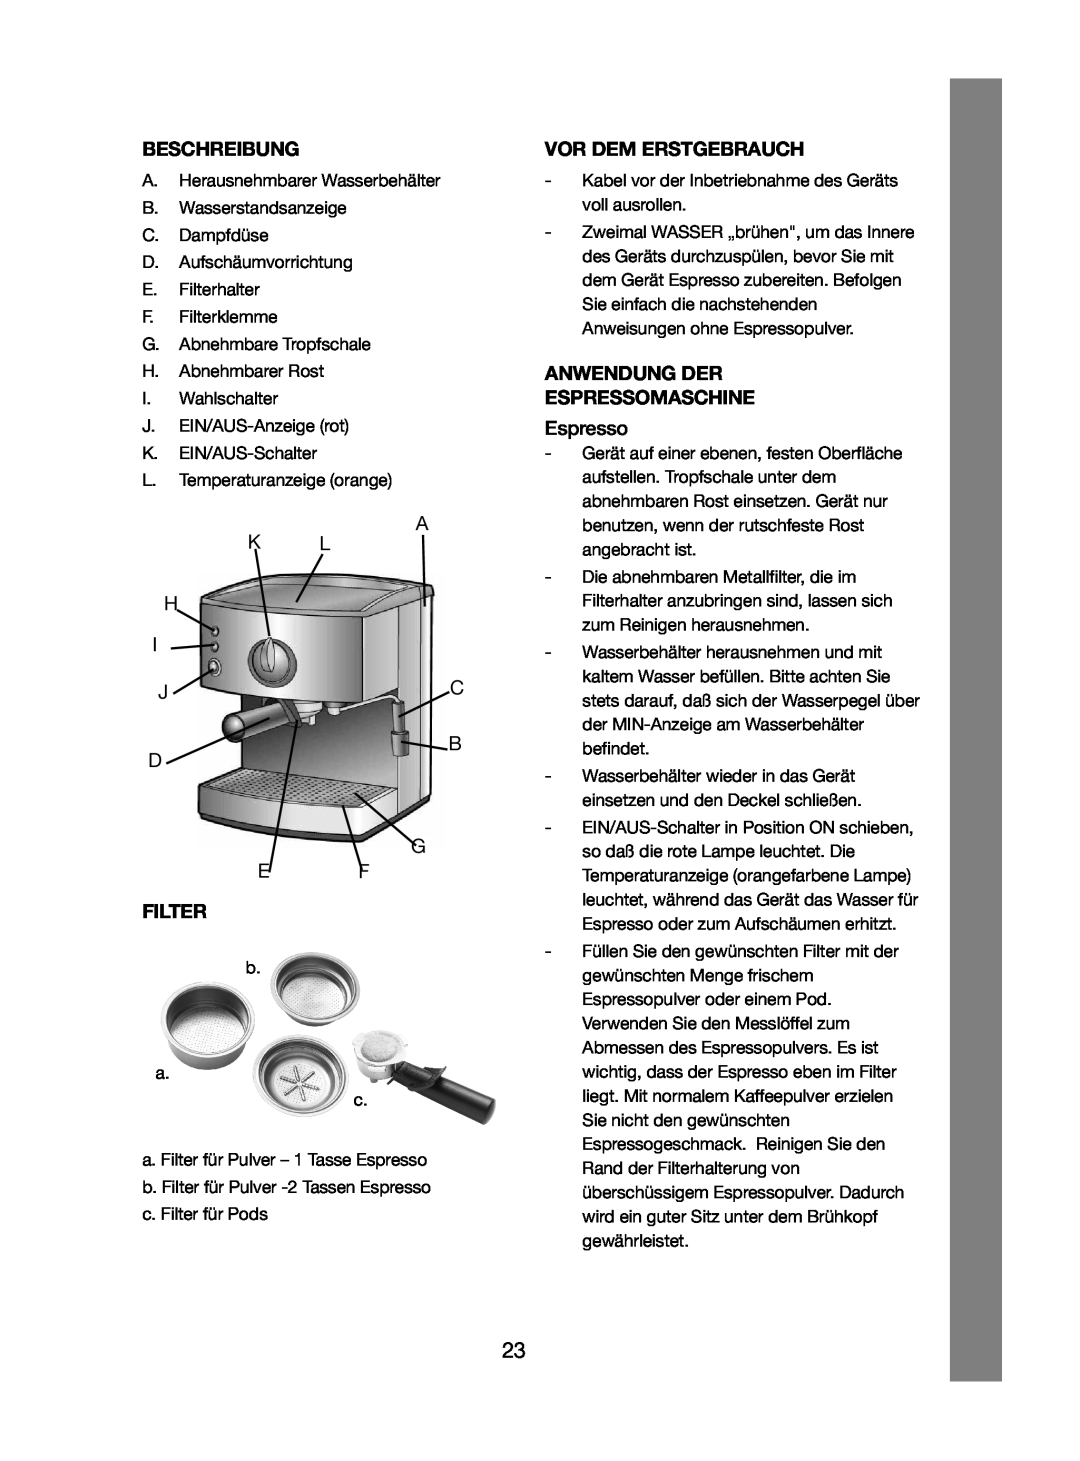 Melissa 245-032 manual Beschreibung, Vor Dem Erstgebrauch, Anwendung Der Espressomaschine, Filter 